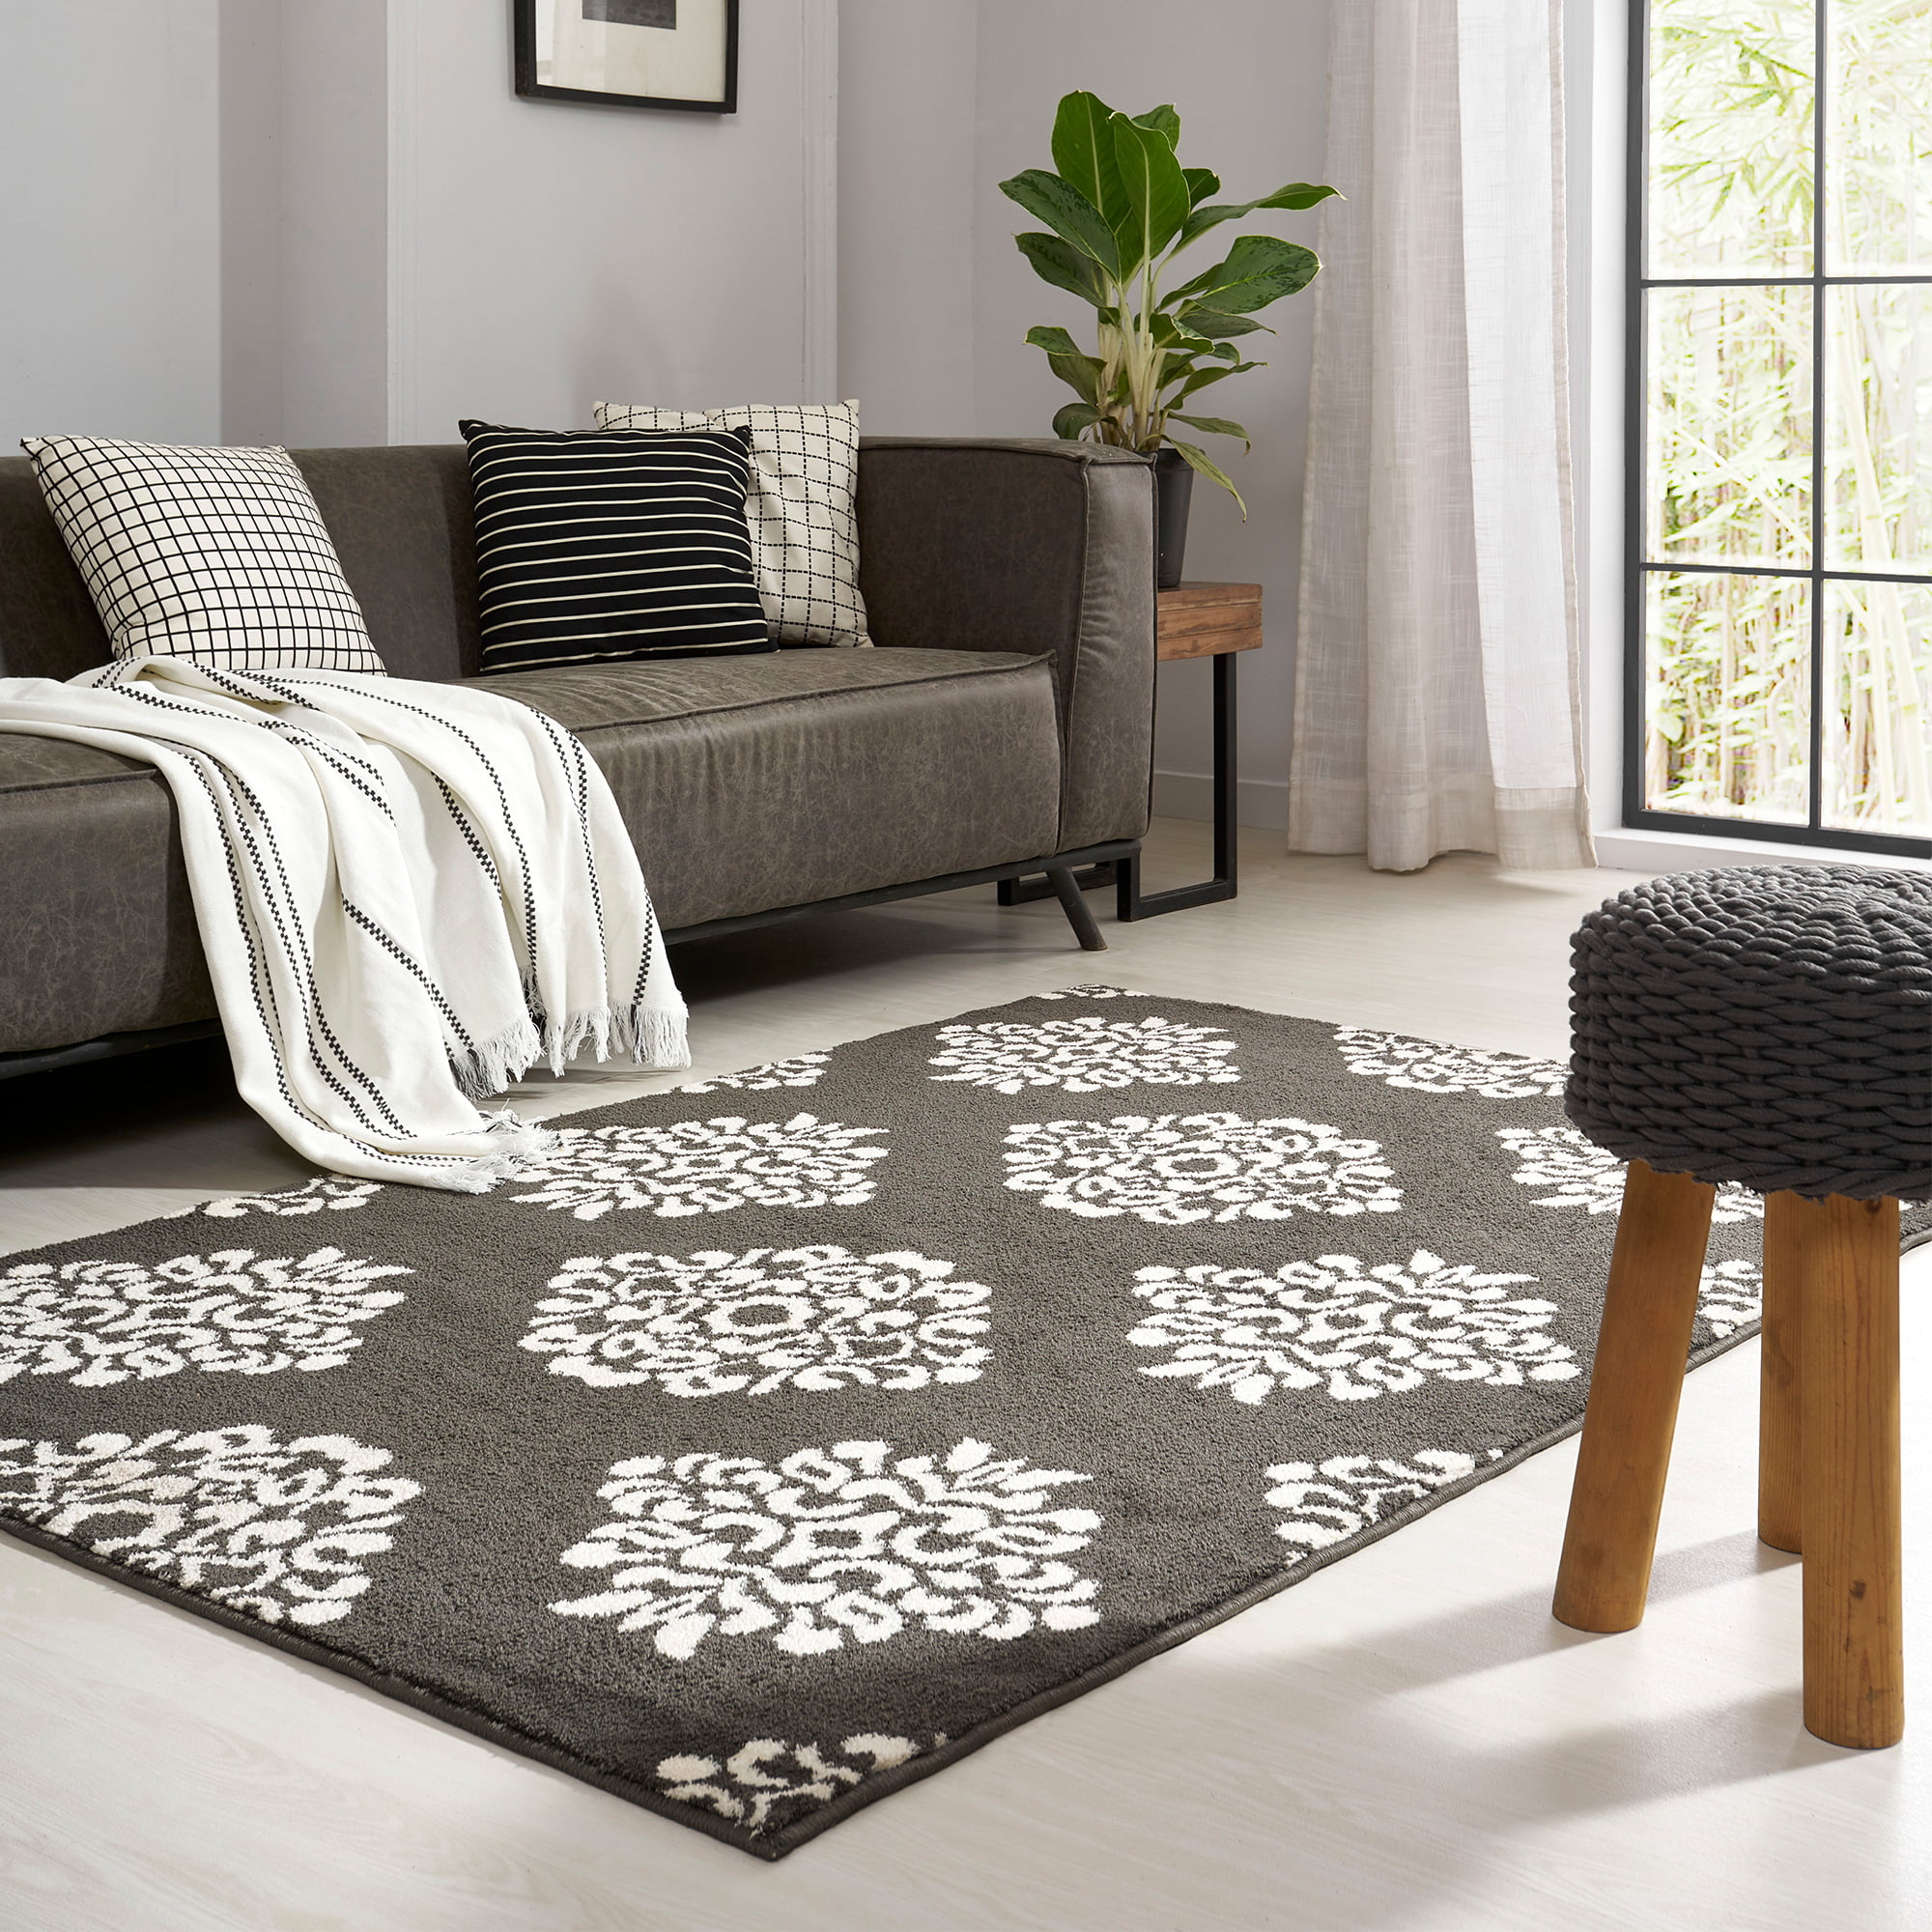 Designer Rug Brown Beige Modern Contour Pattern Soft Living Room Lounge Carpet 